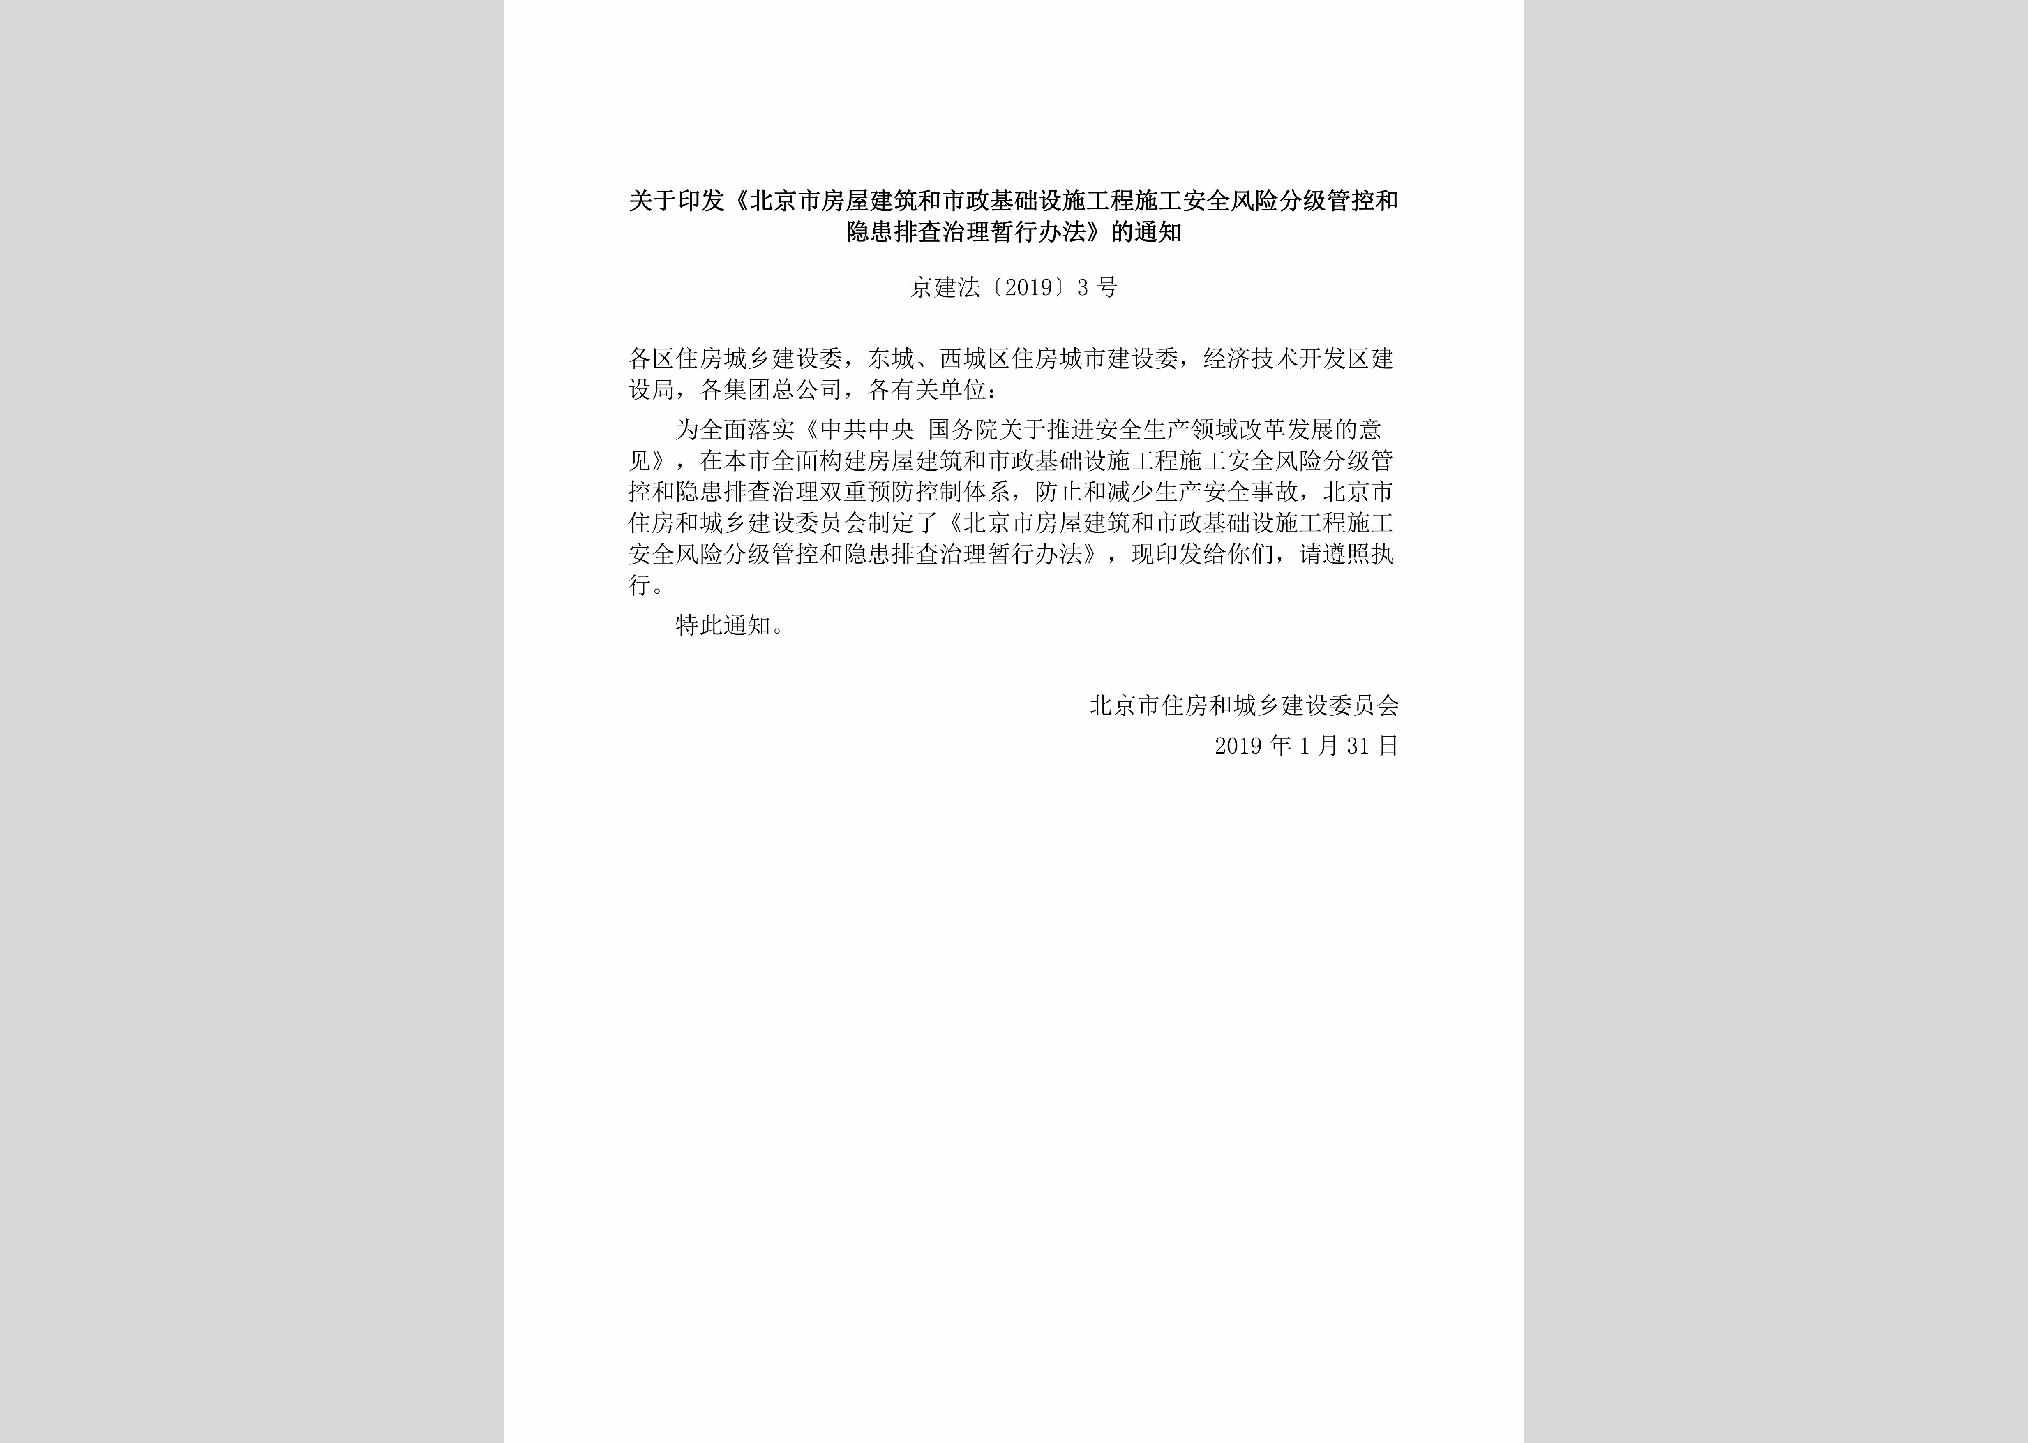 京建法[2019]3号：关于印发《北京市房屋建筑和市政基础设施工程施工安全风险分级管控和隐患排查治理暂行办法》的通知